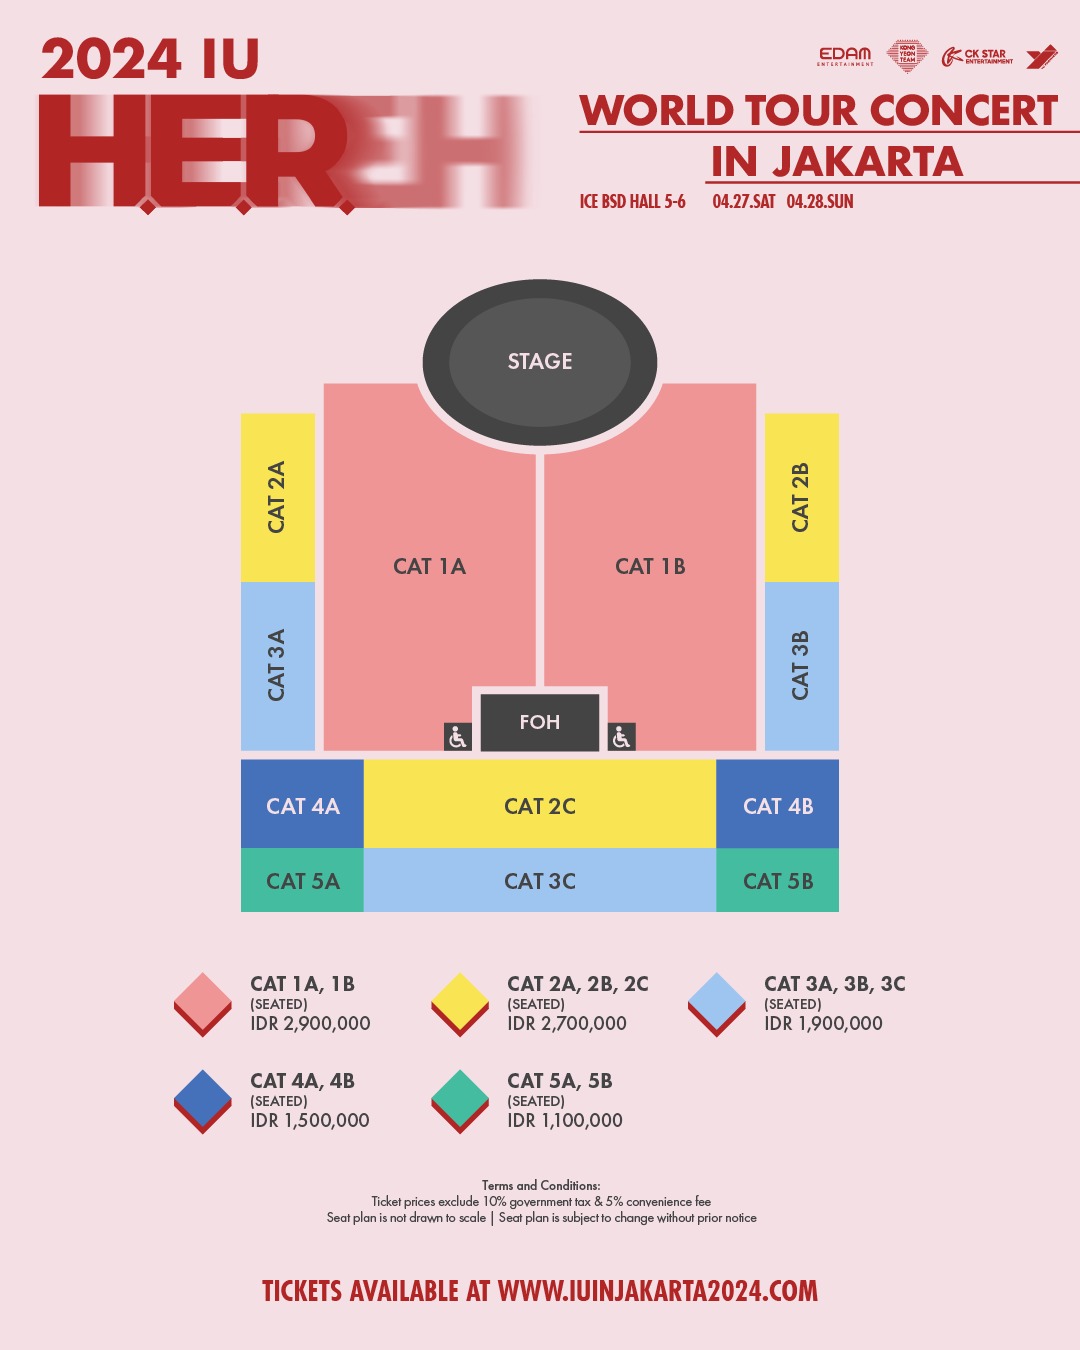 Seat plan konser IU di ICE BSD City (Sumber gambar: laman IU in Jakarta 2024)